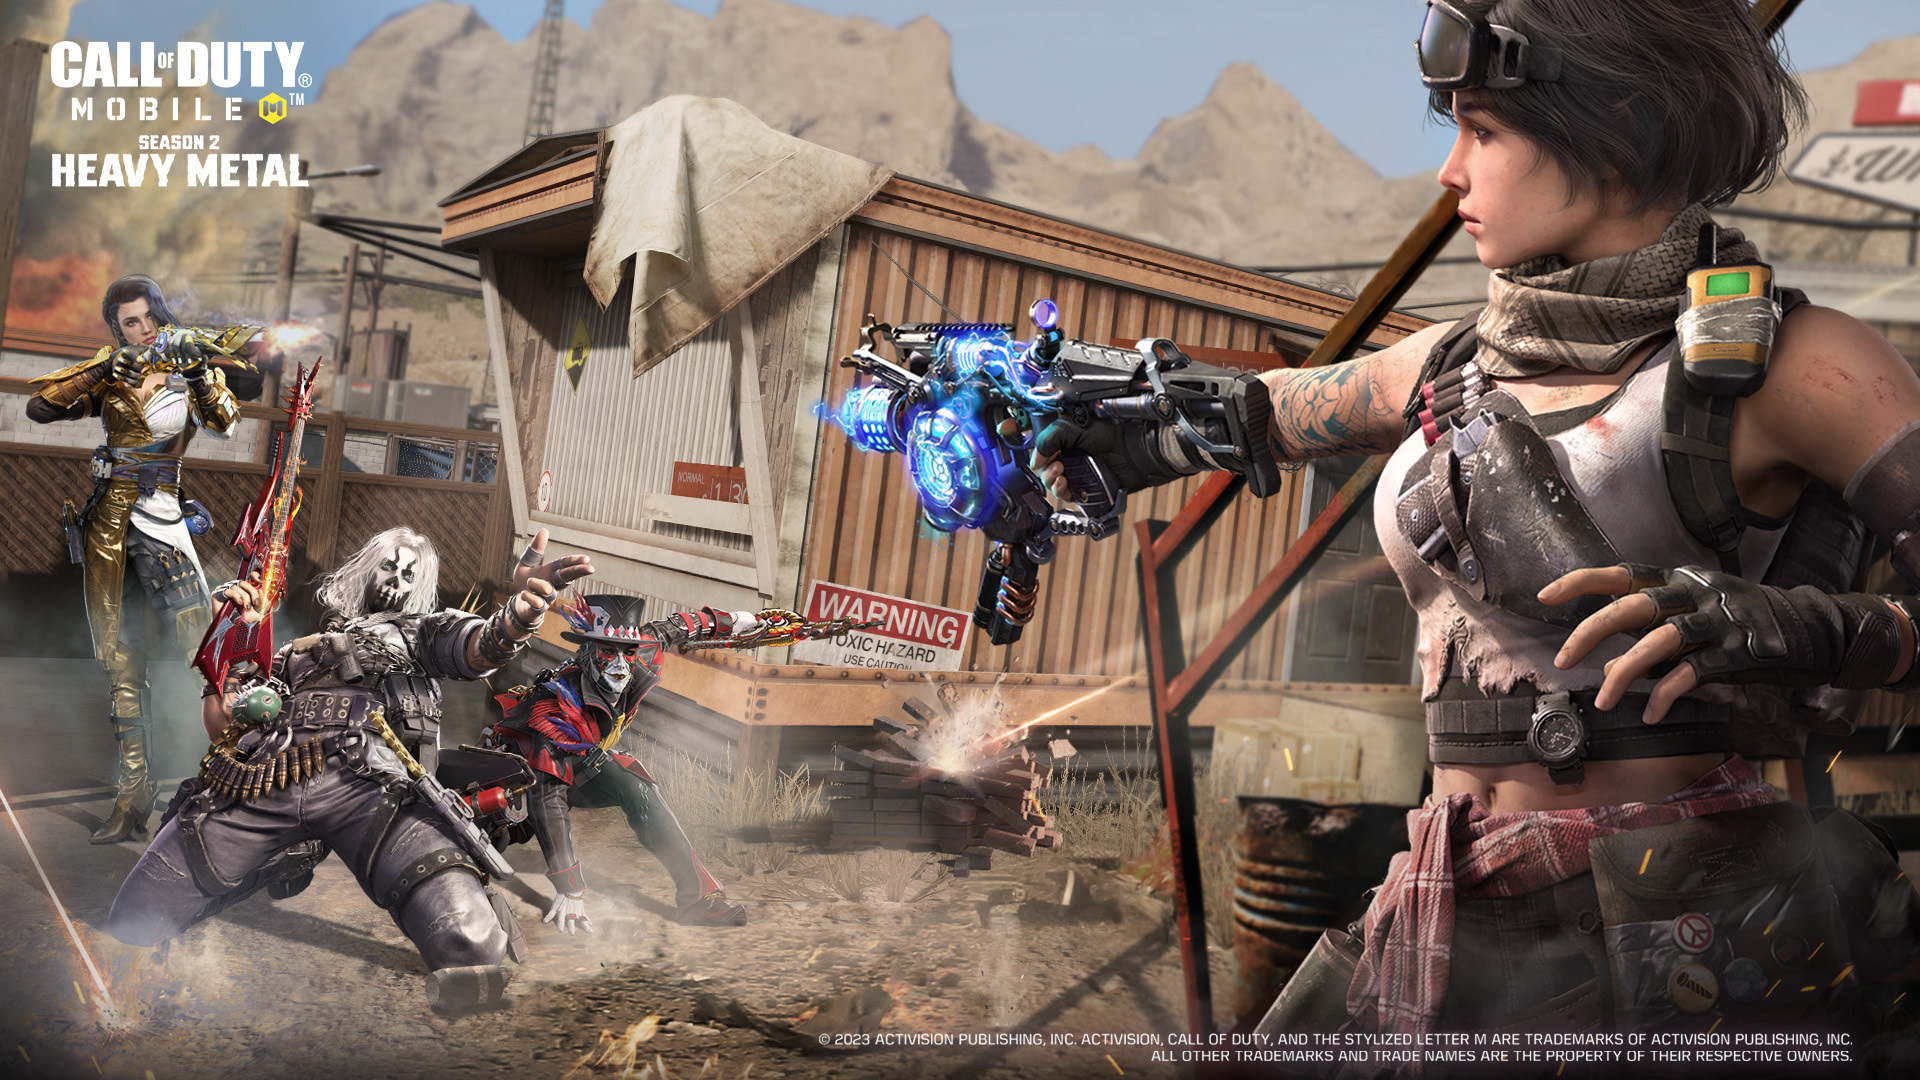 Undian Karakter Legendaris Baru hadir dengan empat karakter baru di Call of Duty Mobile